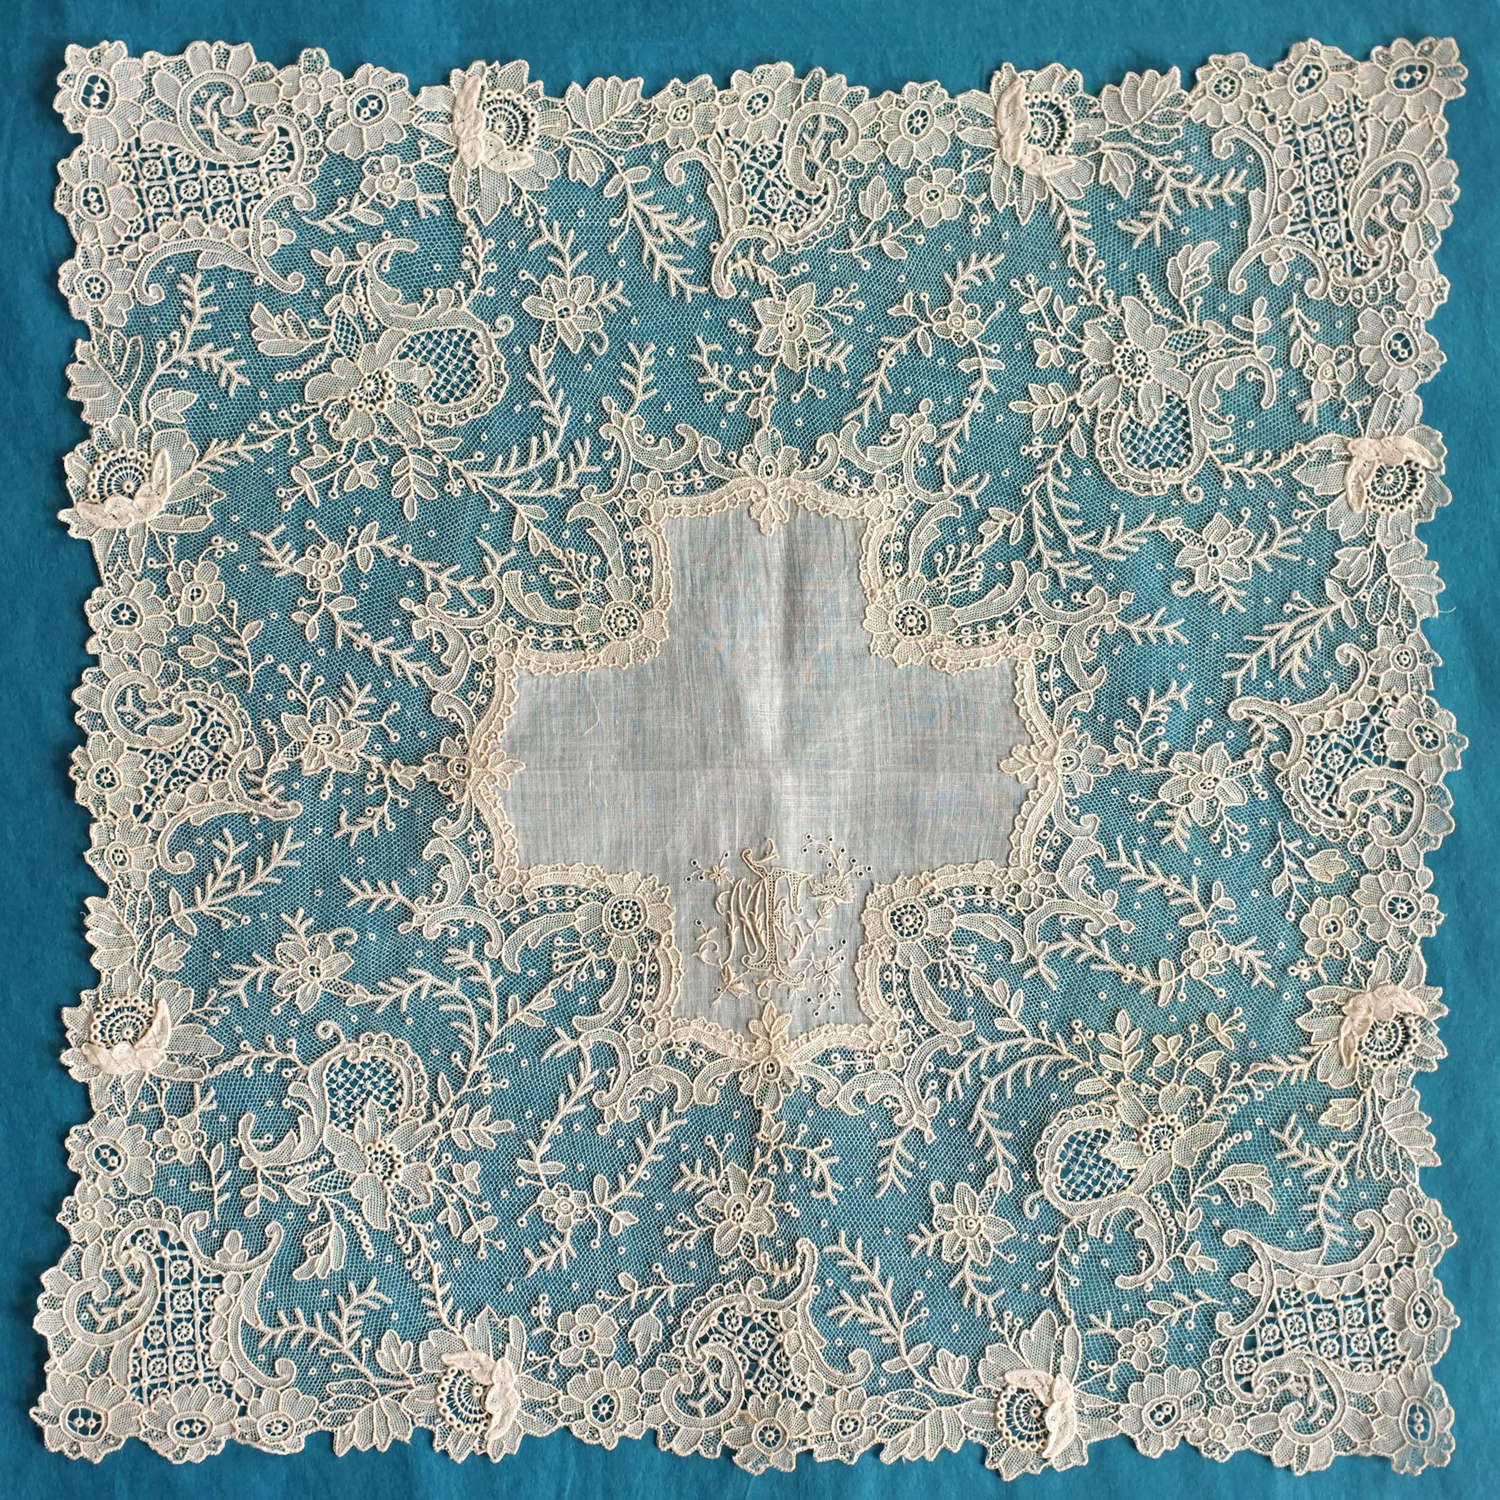 Antique Brussels Point de Gaze Lace Handkerchief